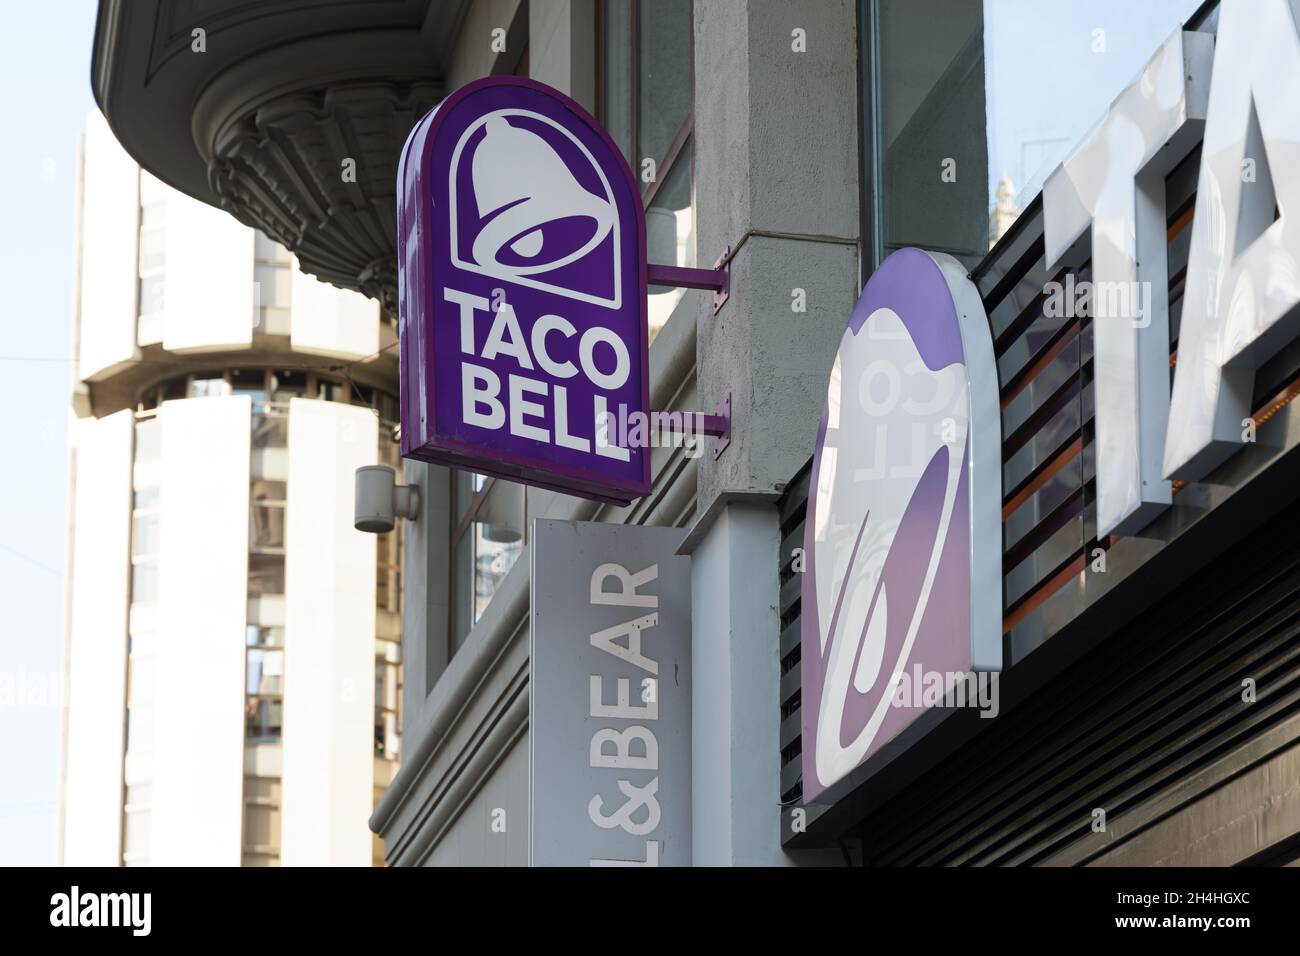 VALENCIA, SPAGNA - 26 OTTOBRE 2021: Il Taco Bell è una catena americana di fast food. I ristoranti servono una varieta' di ispirazione messicana Foto Stock